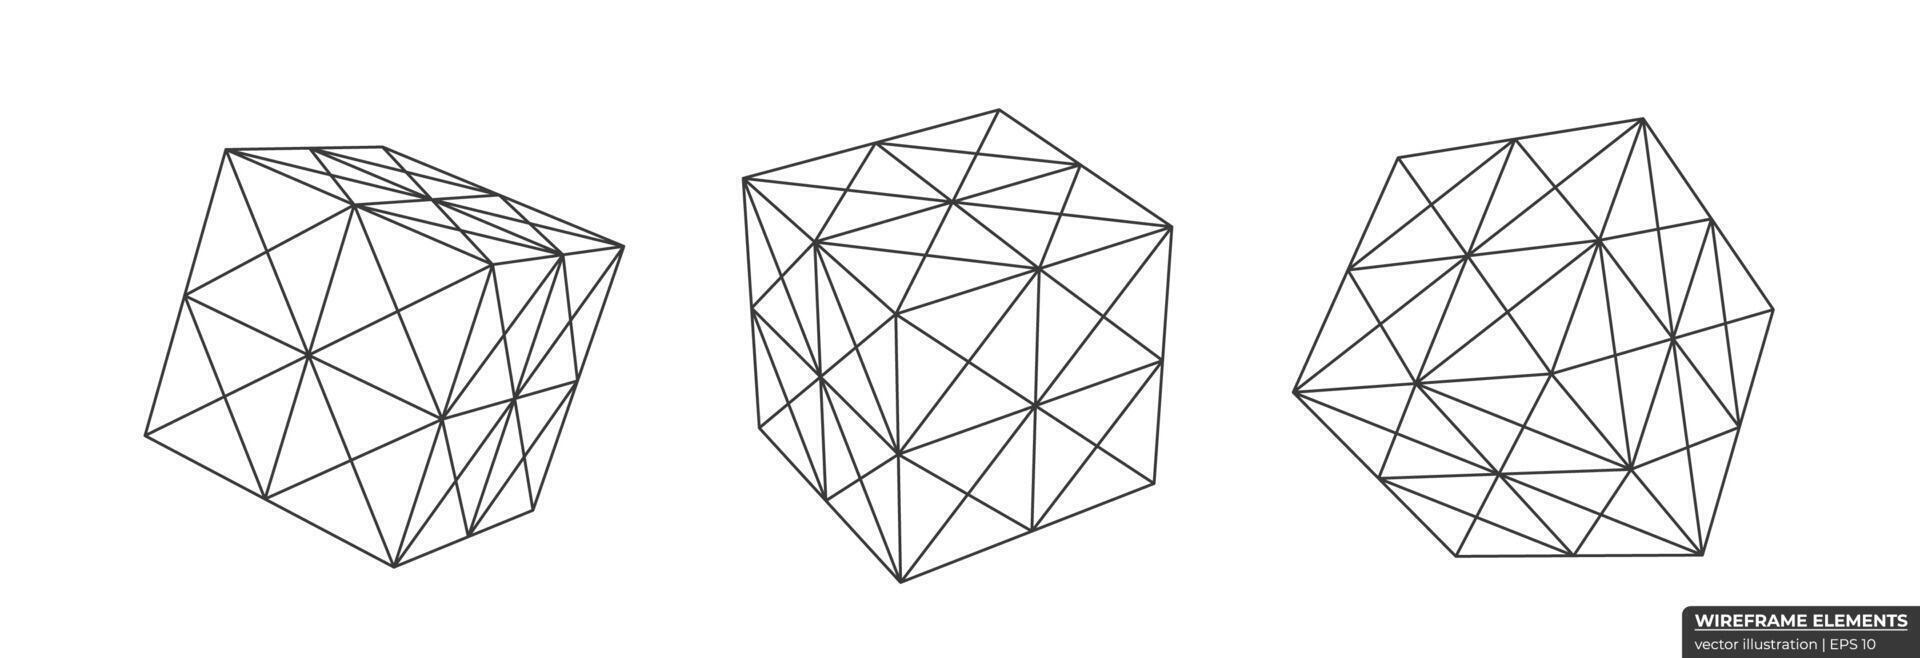 uppsättning av trådmodell kub från annorlunda sidor. samling av lowpoly 3d polygonal former. kub rutnät geometri vektor illustration